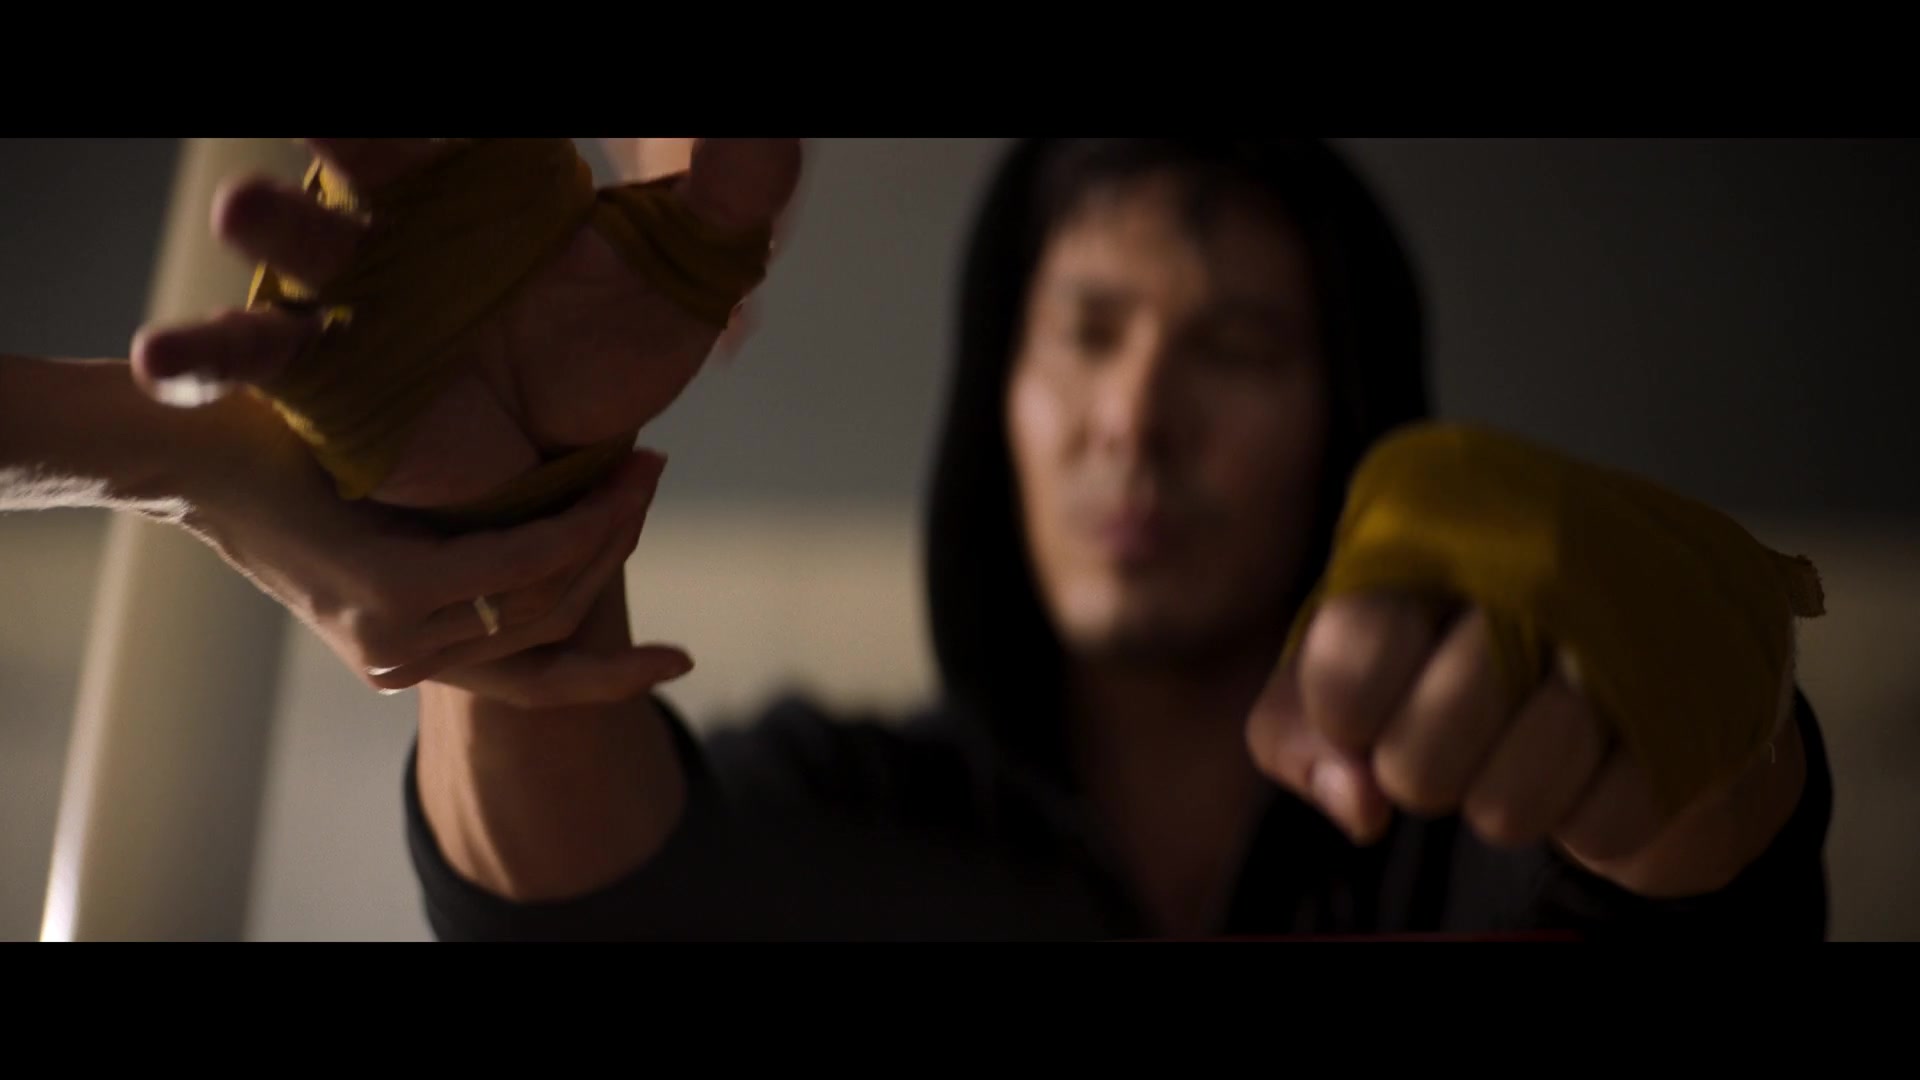 [ cap-that.com ] Mortal Kombat Mortal Kombat > screencap archive